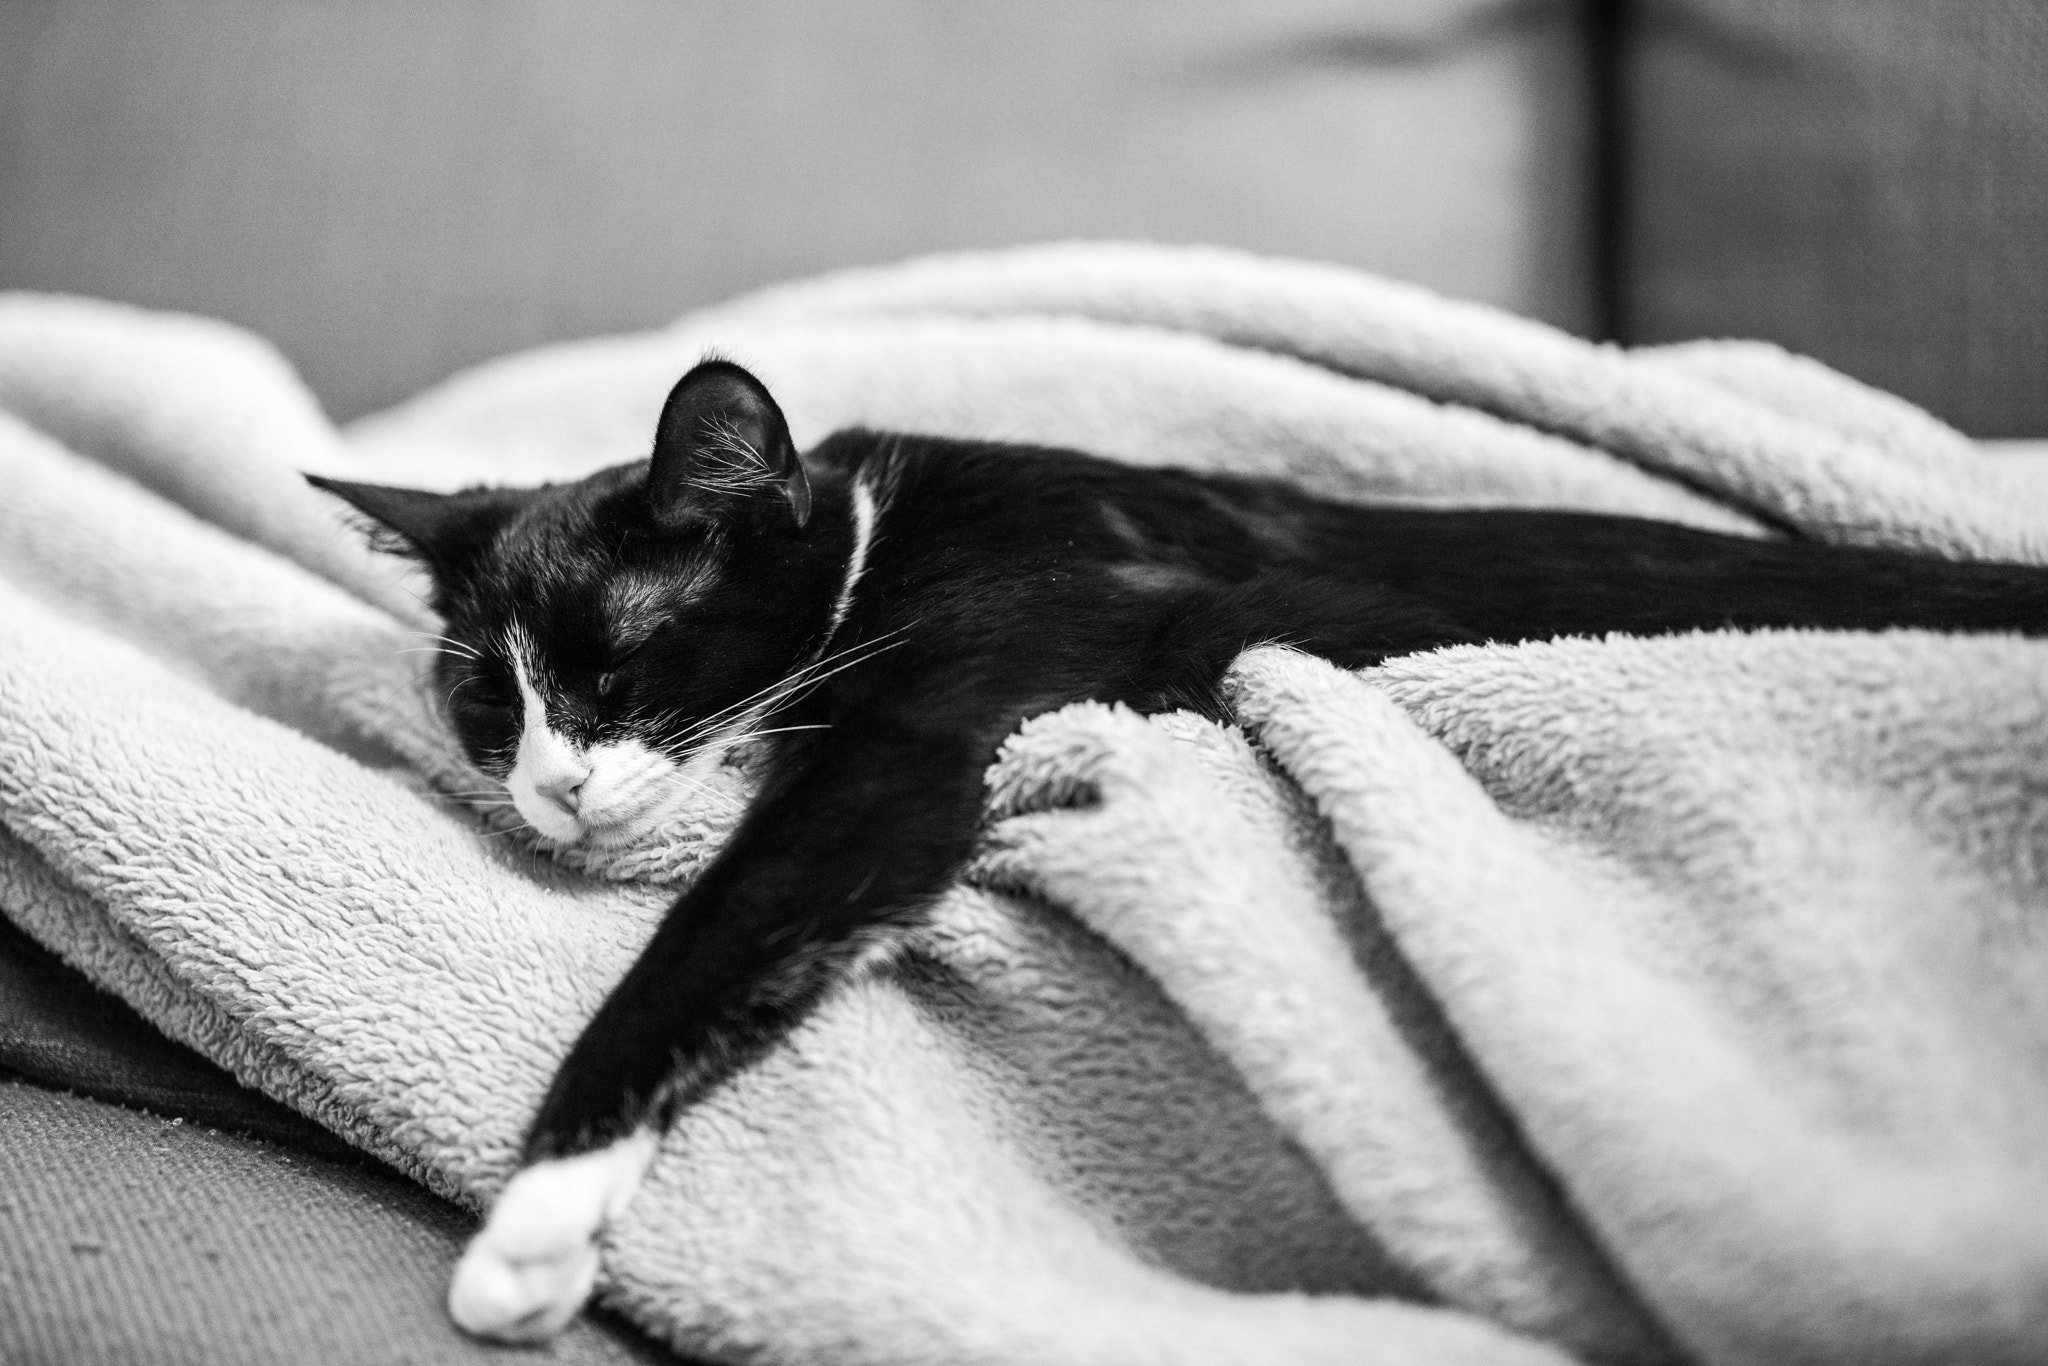 ZEISS Otus 85mm F1.4 sample photo. Sleeping kitten photography